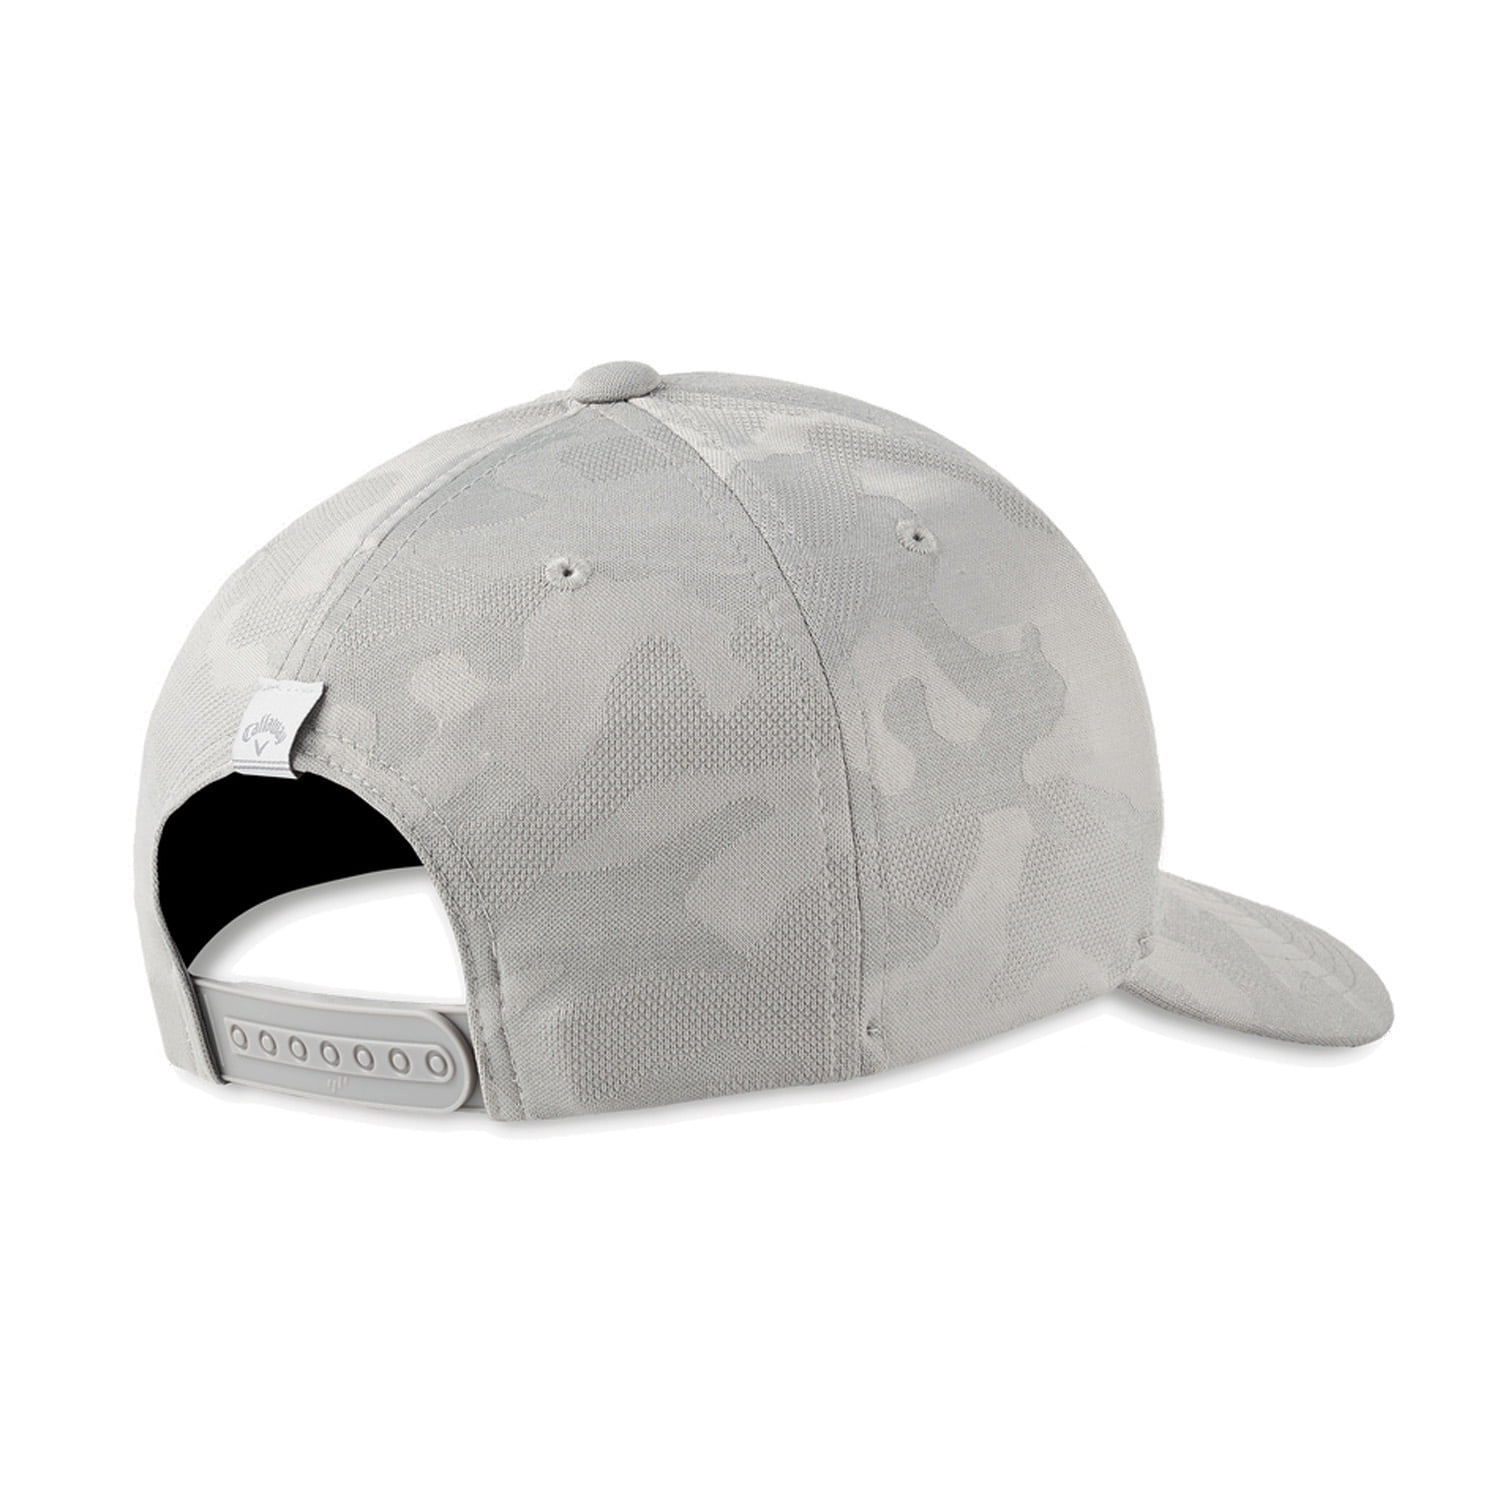 2021 Callaway Golf Camo FLEXFIT Navy Snapback Golf Hat/Cap